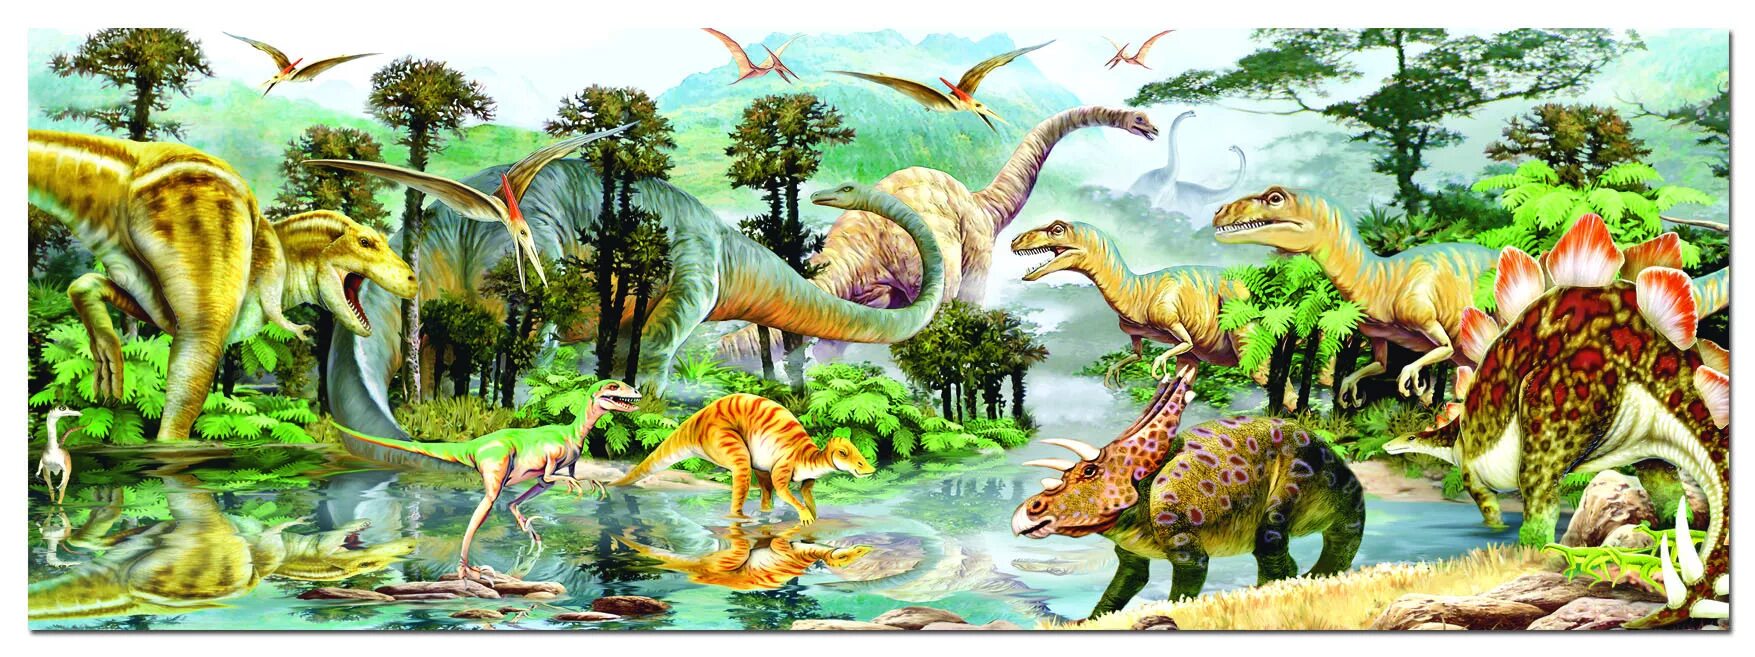 Динозавры. Динозавры в природе. Мир динозавров. Эпоха динозавров. Урок мир динозавров